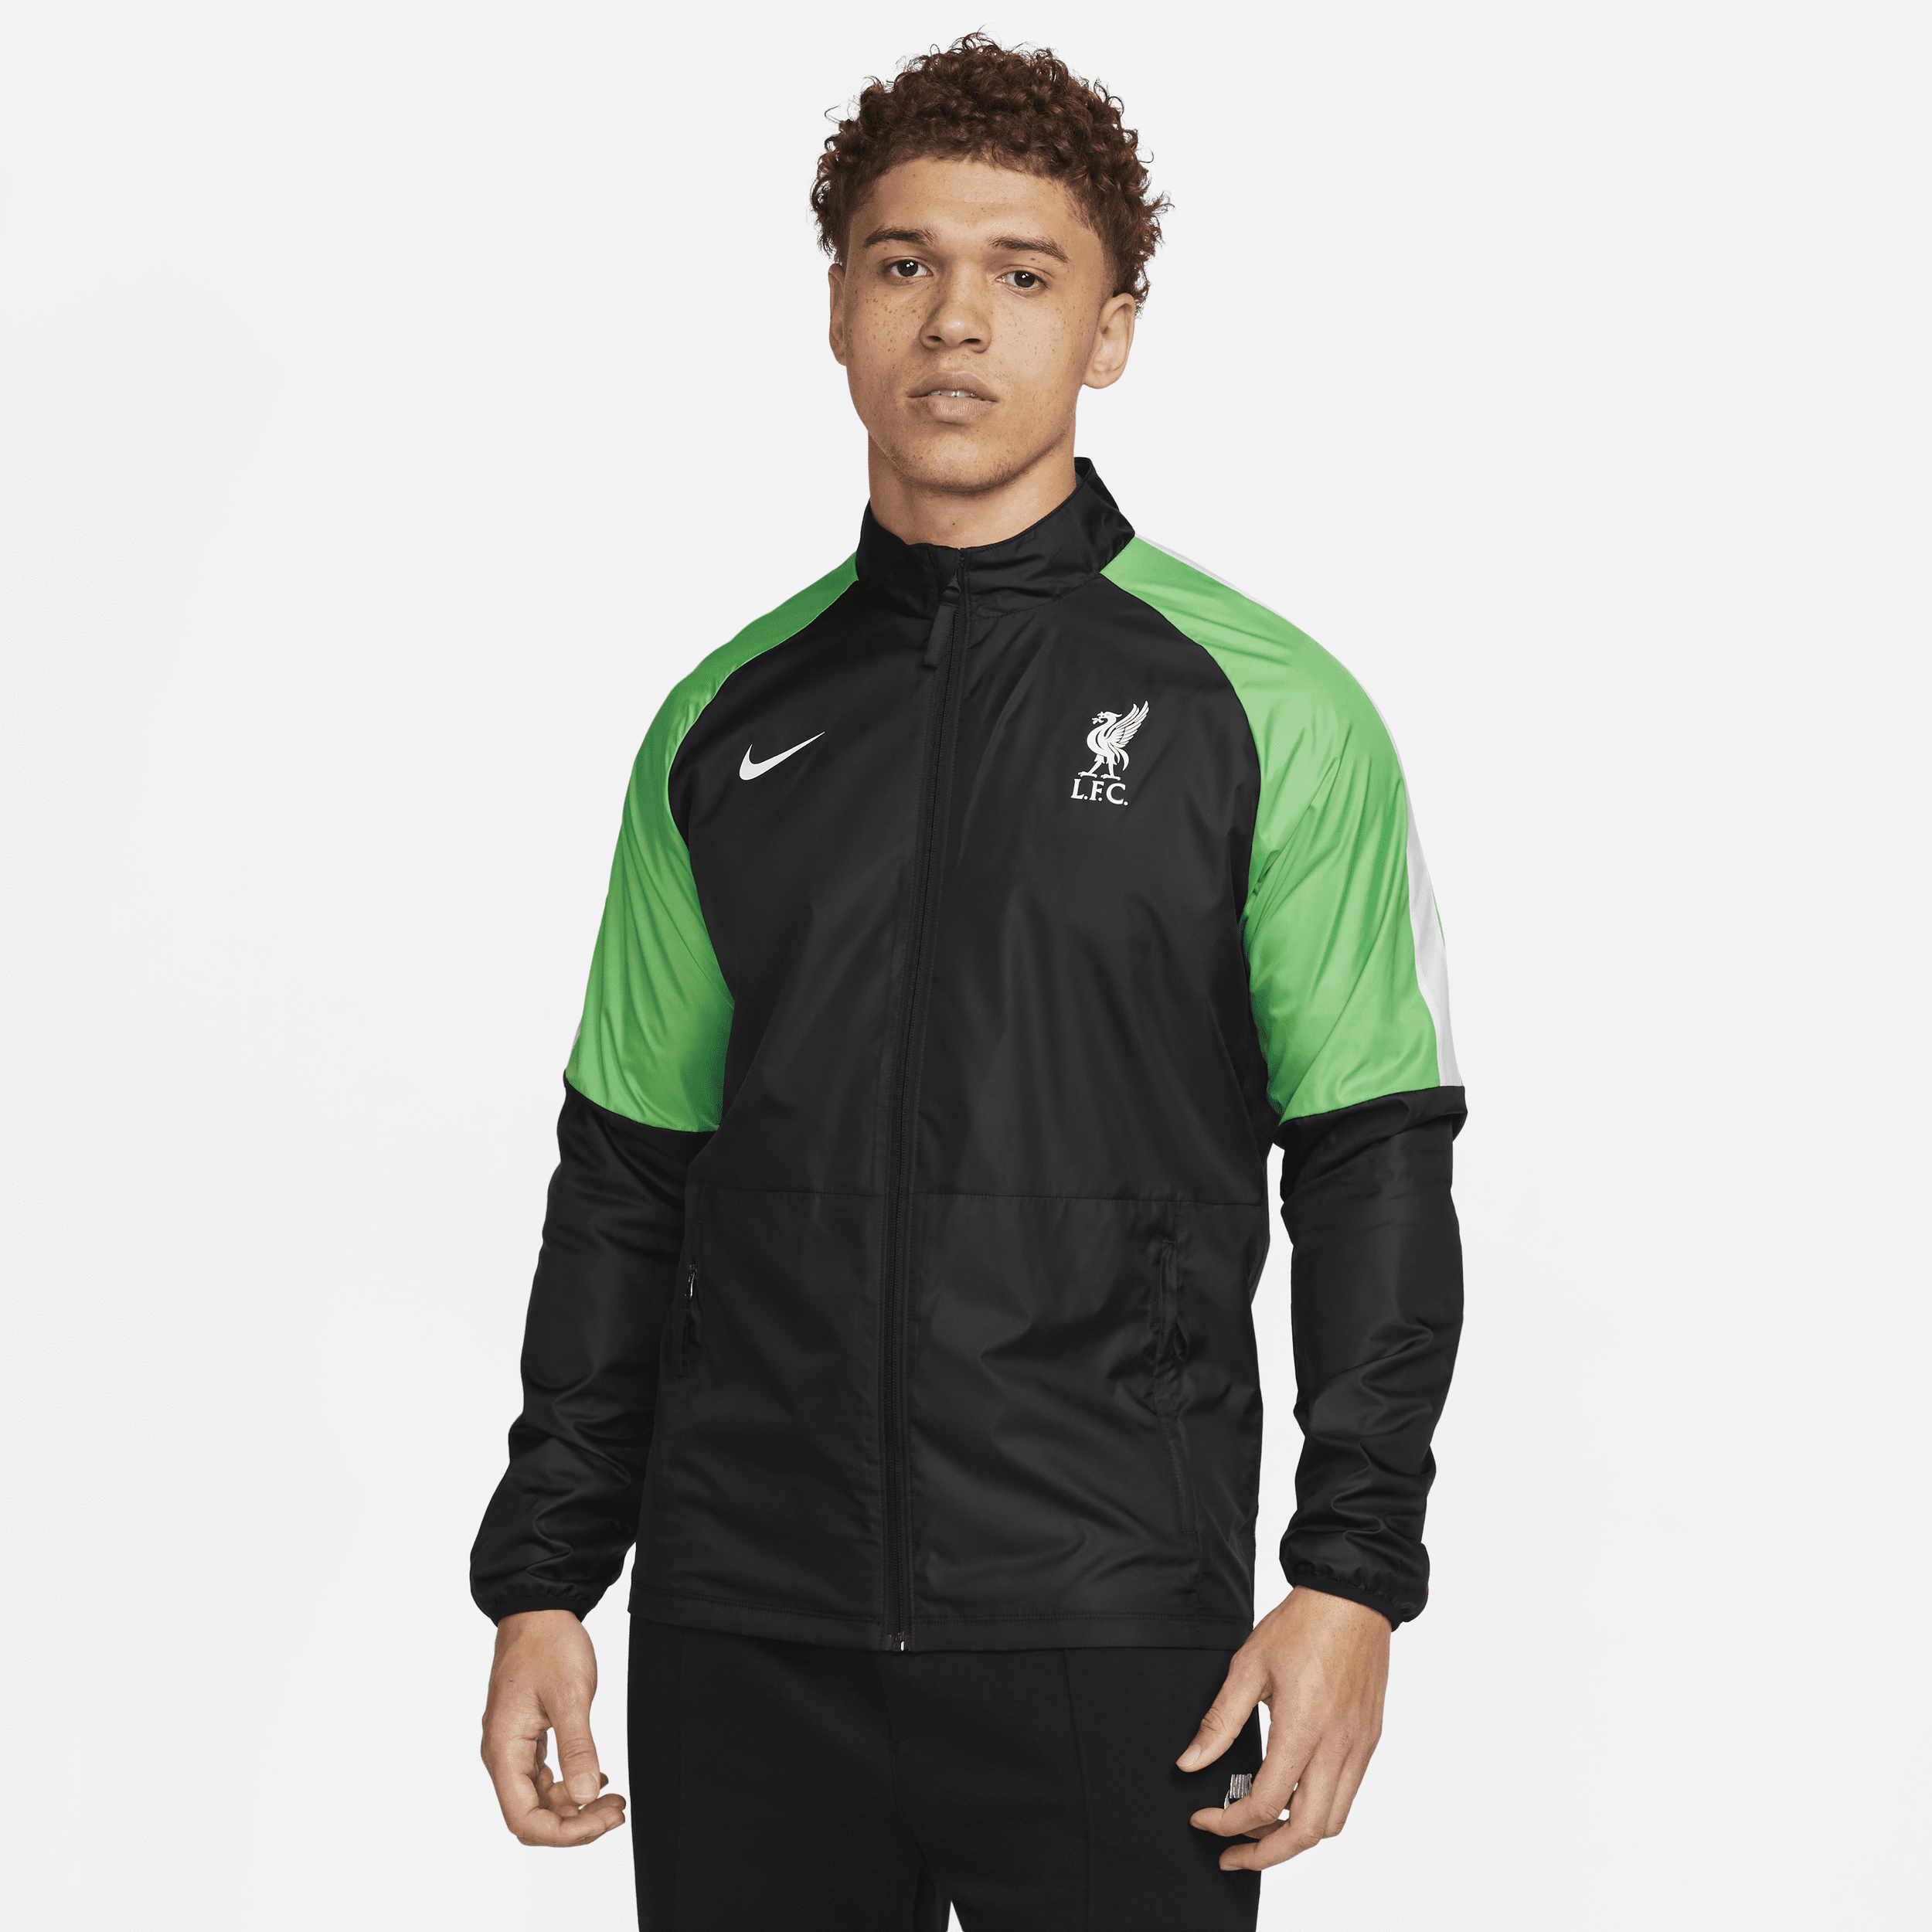 Liverpool FC Repel Academy AWF Nike voetbaljack voor heren - Zwart